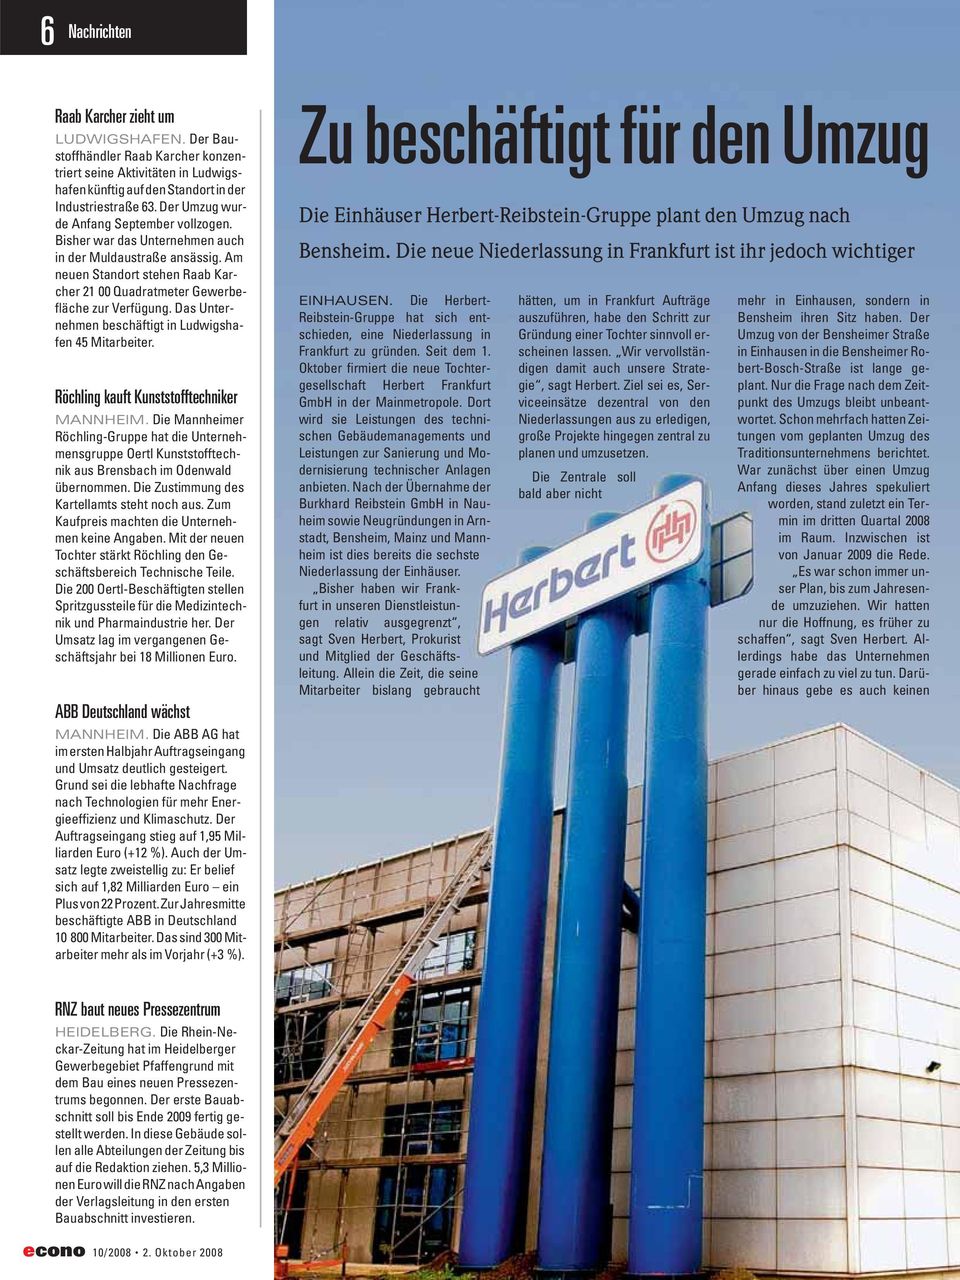 Das Unternehmen beschäftigt in Ludwigshafen 45 Mitarbeiter. Röchling kauft Kunststofftechniker MANNHEIM.